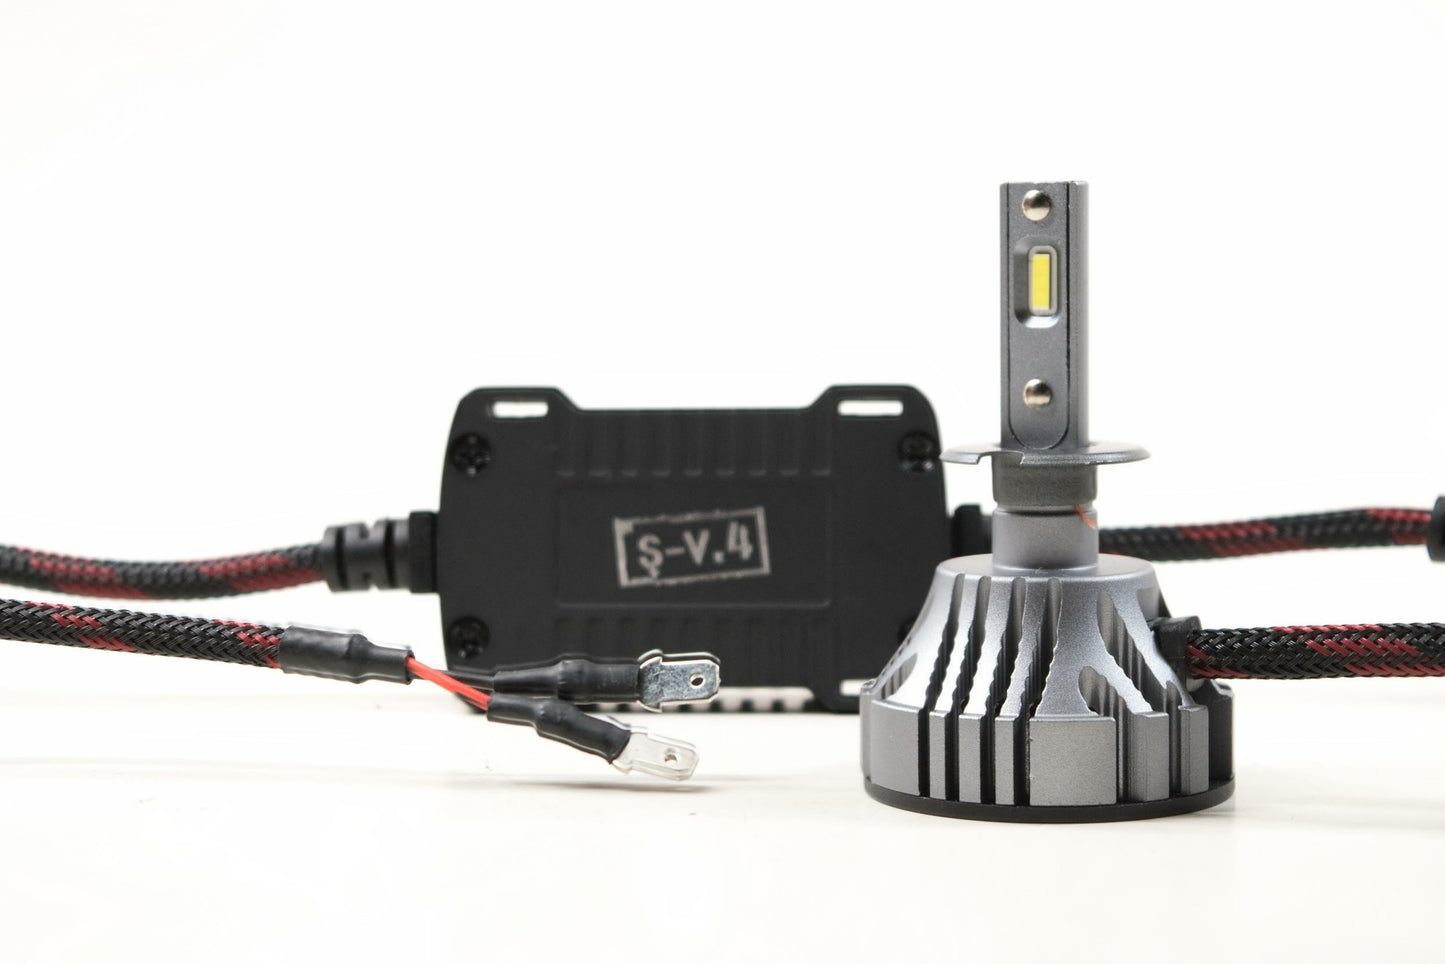 H3: S-V.4 LED Bulb